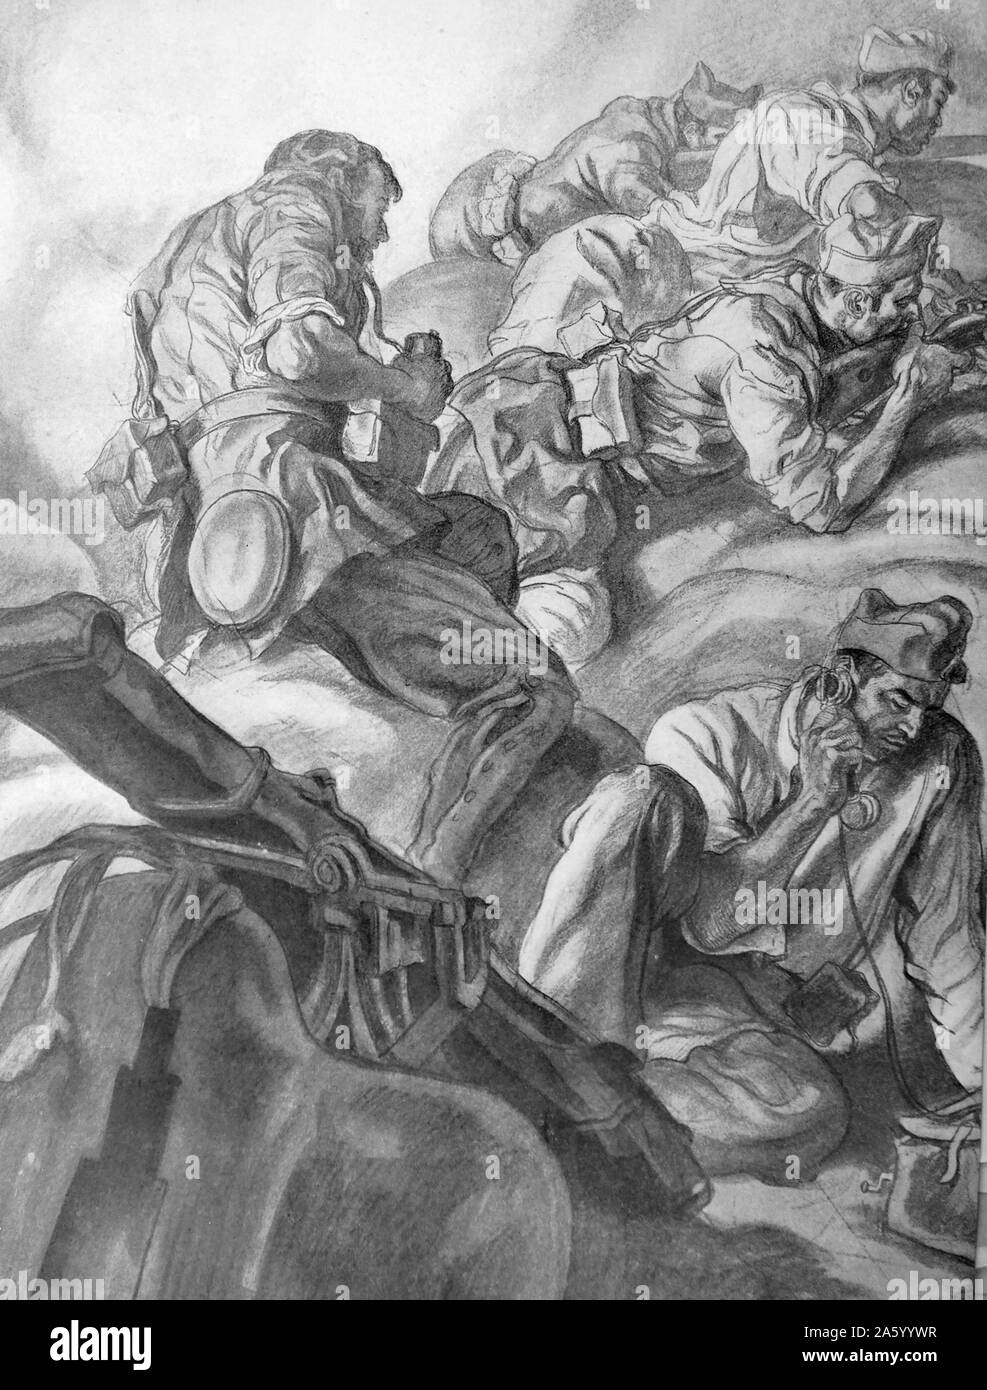 Propaganda-Illustration von Carlos Saenz De Tejada nationalistische Soldaten mit Feldtelefon im Einsatz, die Kommunikation mit anderen nationalistischen Kräfte in Aktion zeigen. Spanischer Bürgerkrieg. Datierte 1937 Stockfoto